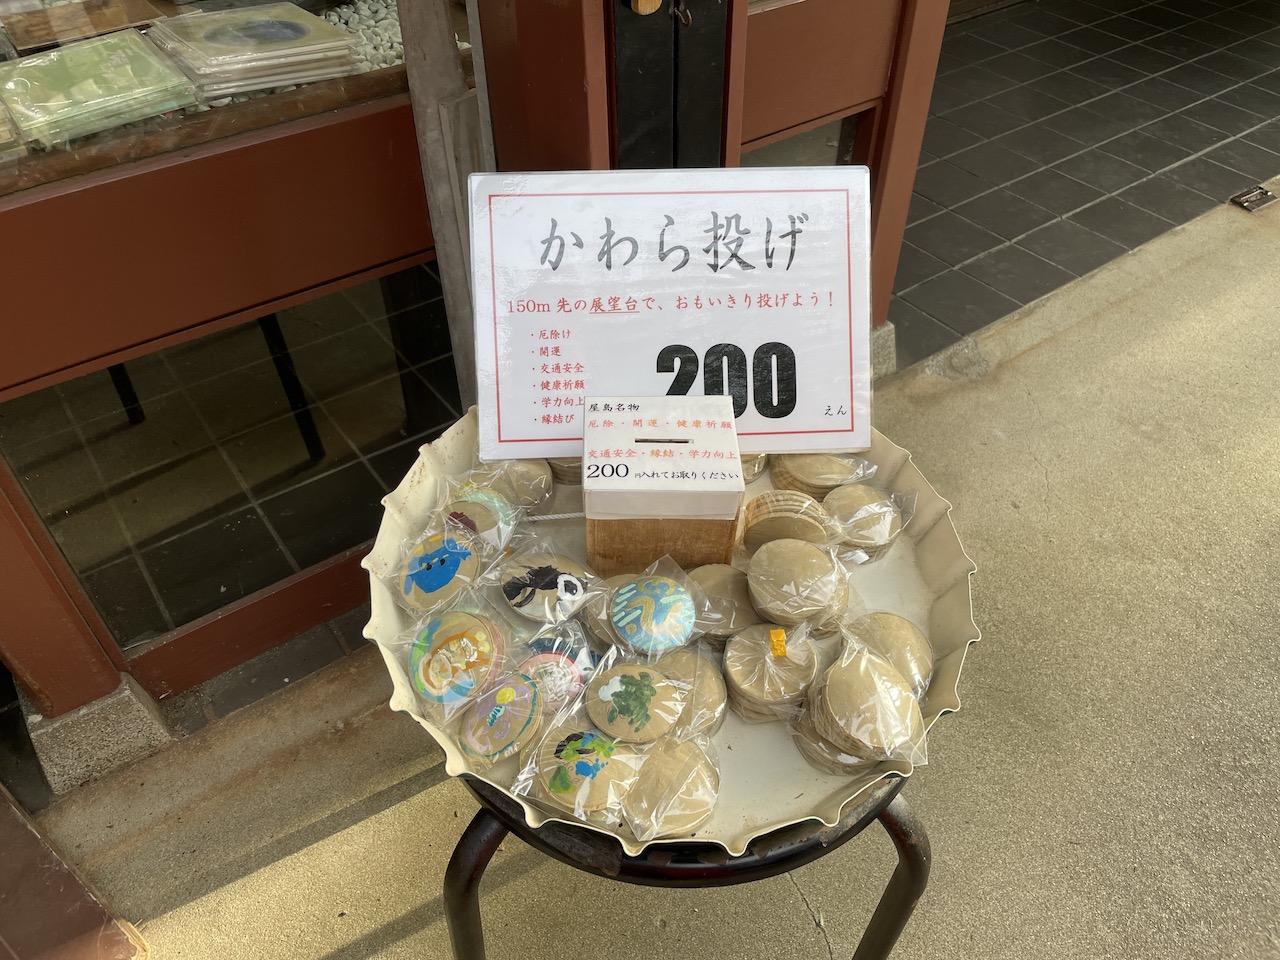 かわら投げ200円でできます